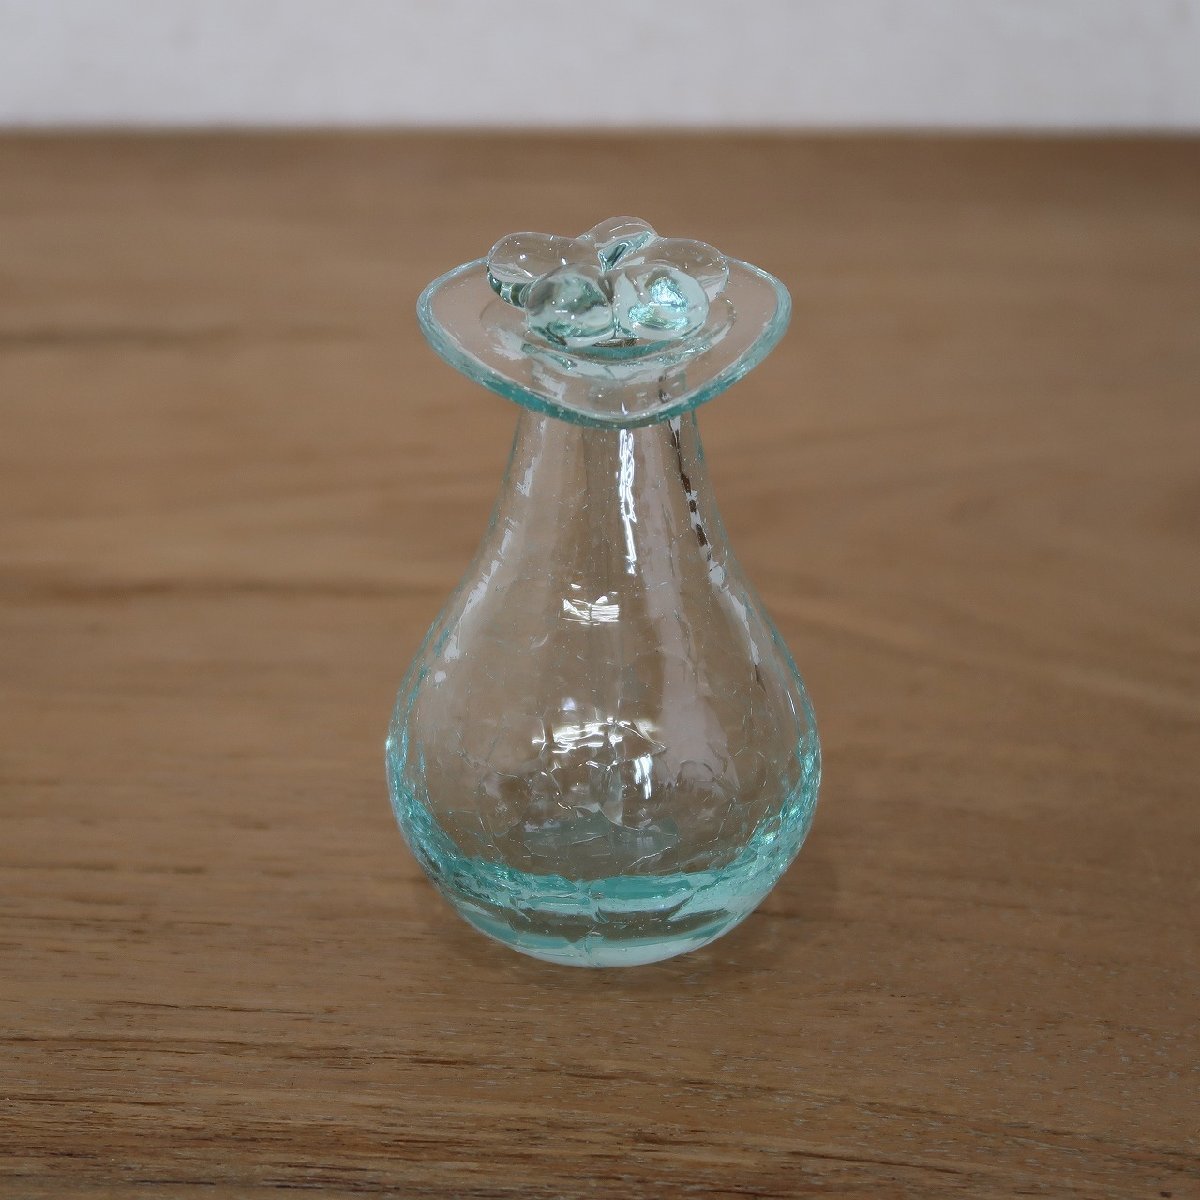  плюмерия стекло бутылка диаметр 6cmX высота 10cm массаж масло бутылка эфирное масло бутылка aroma масло бутылка YSA-090503